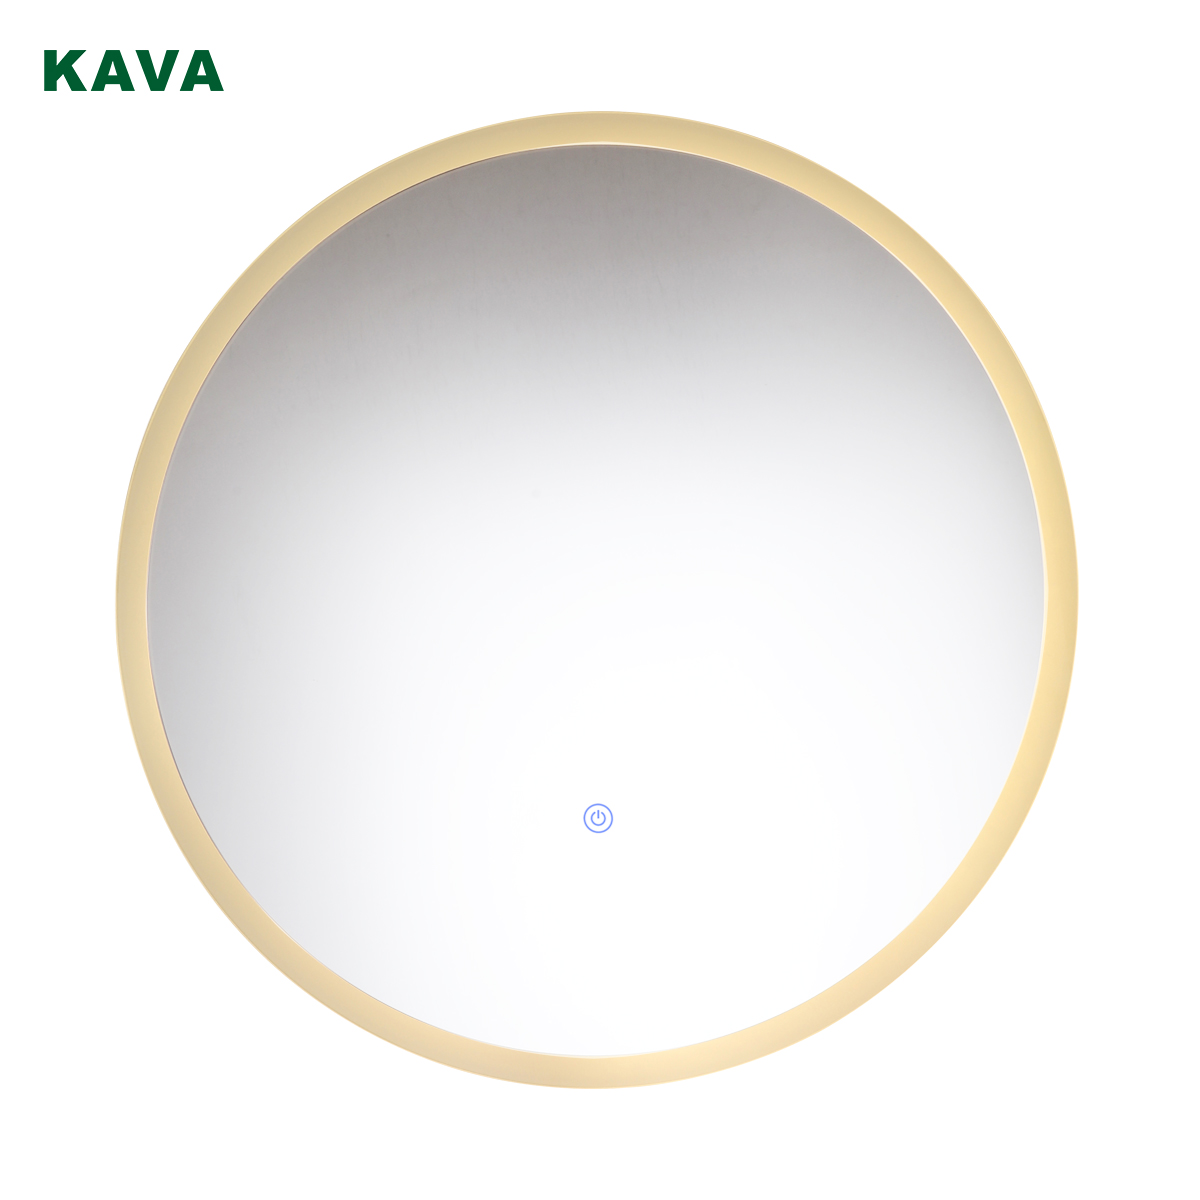 Kava-lighting-vanity-light-on-KMV6008M